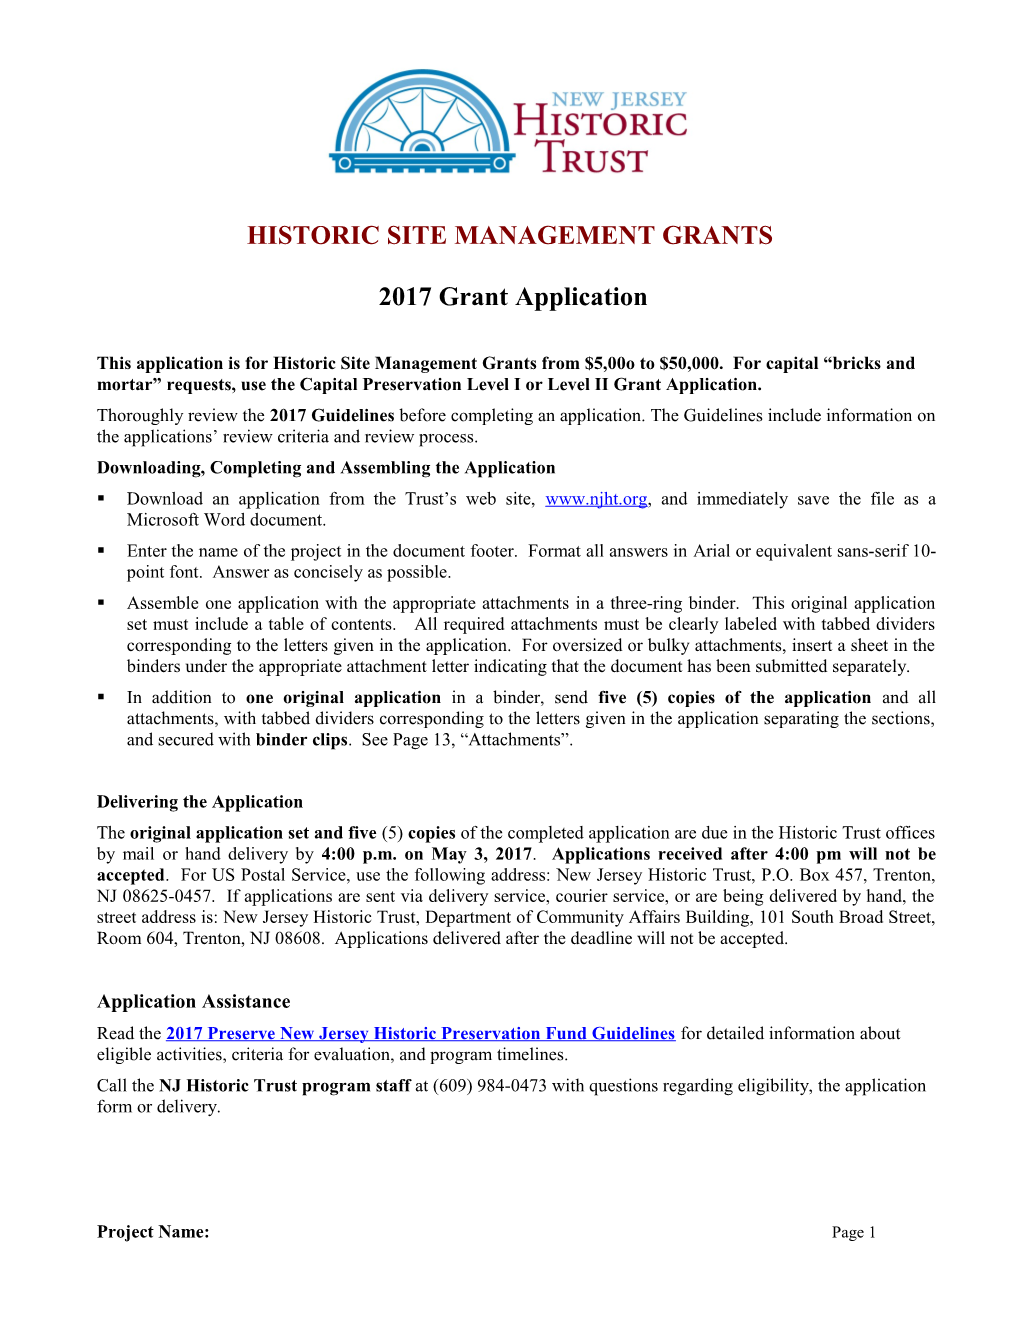 Historic Site Management (Hsm)